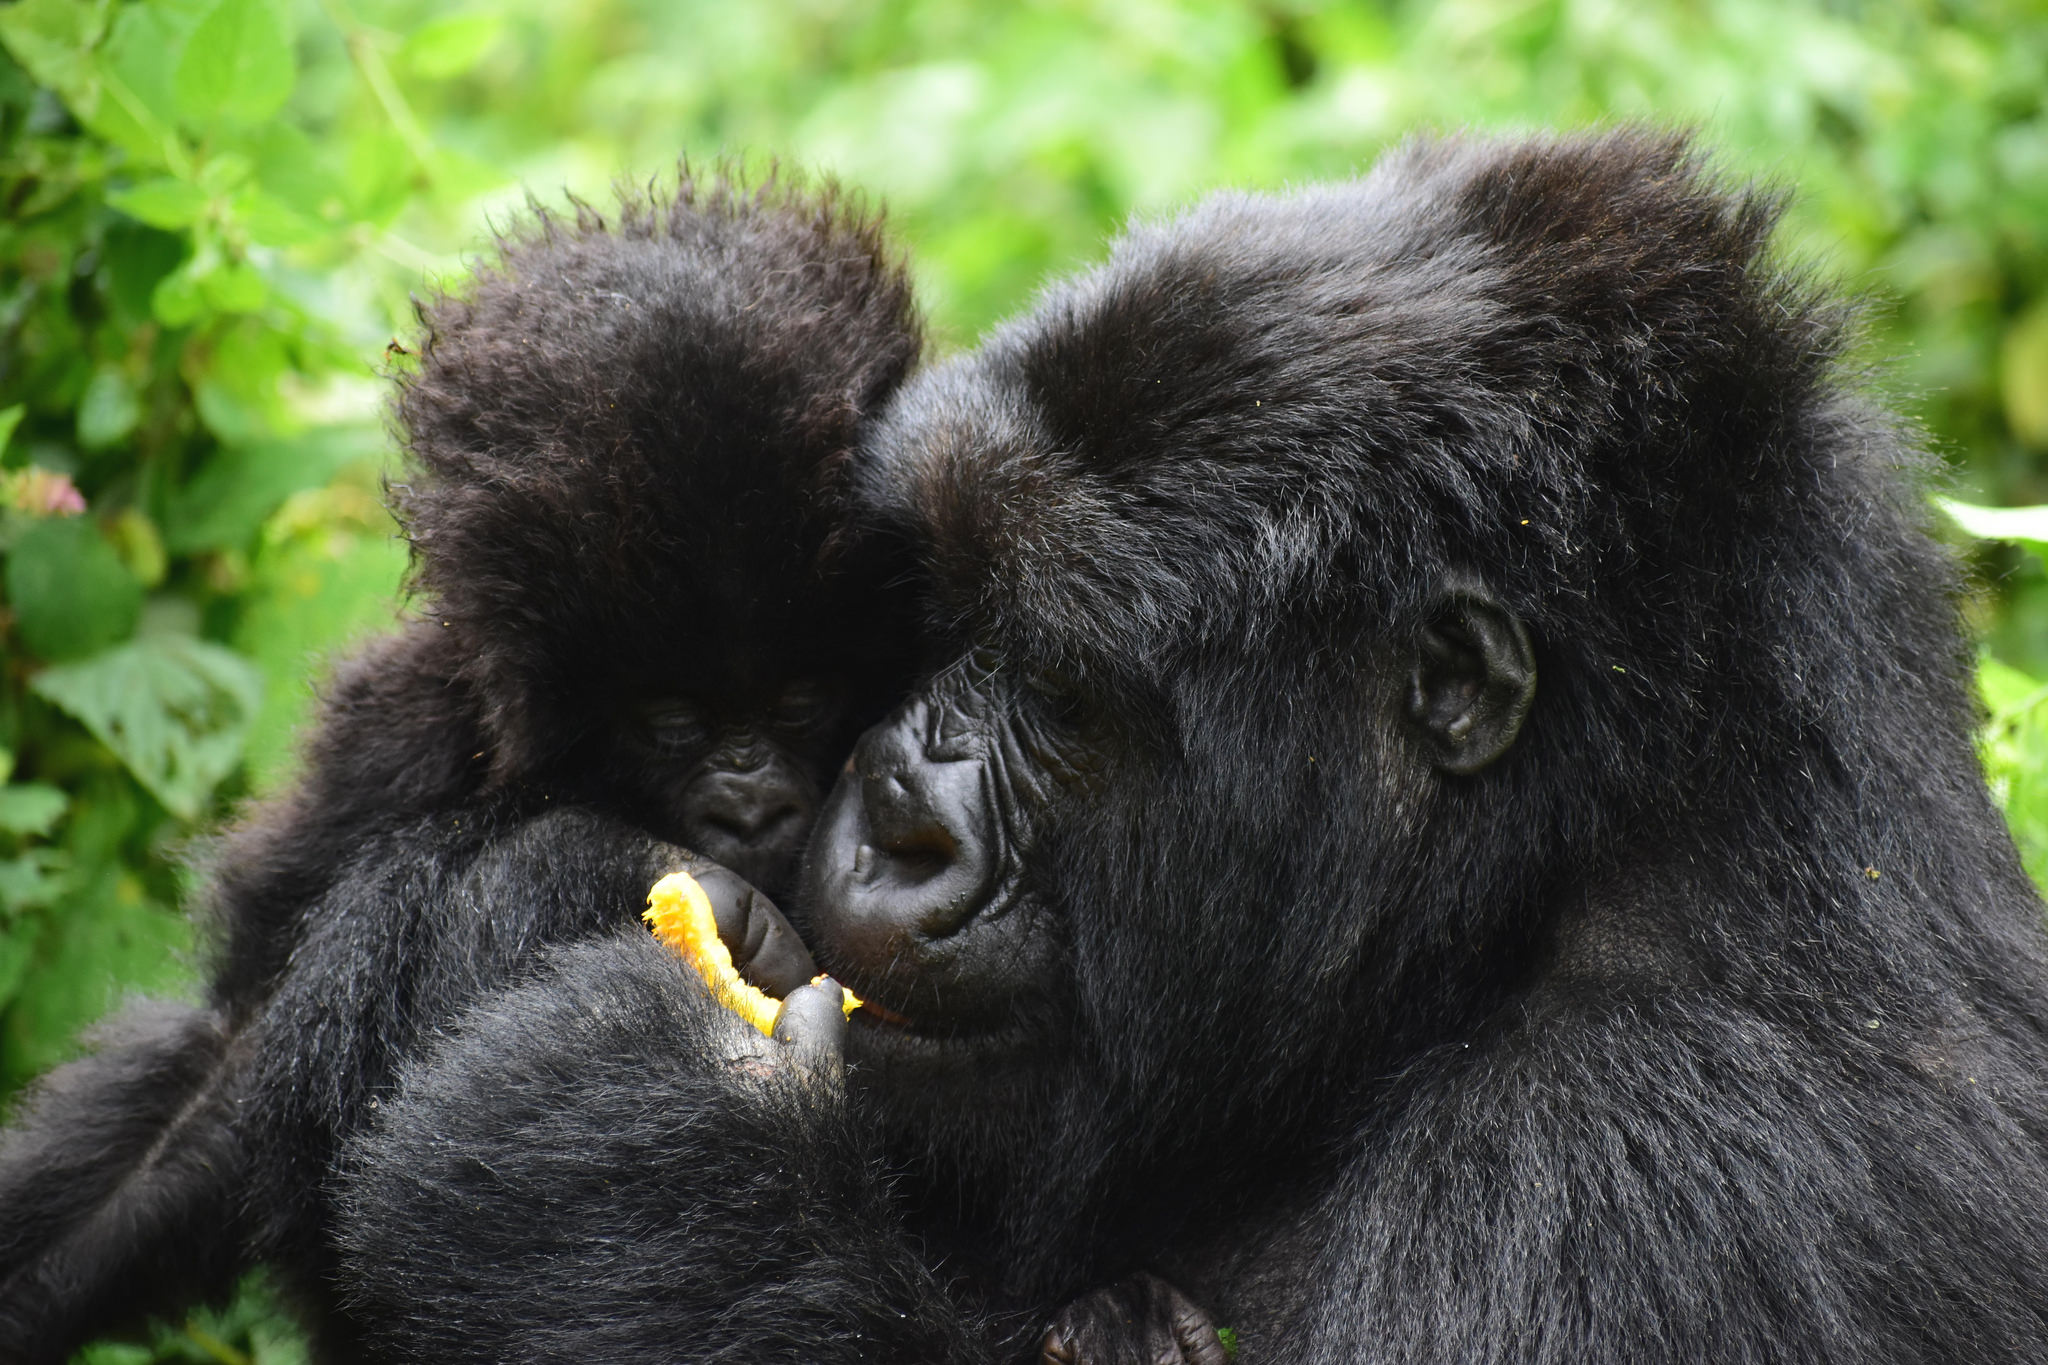 gorilla family, How to save mountain Gorillas